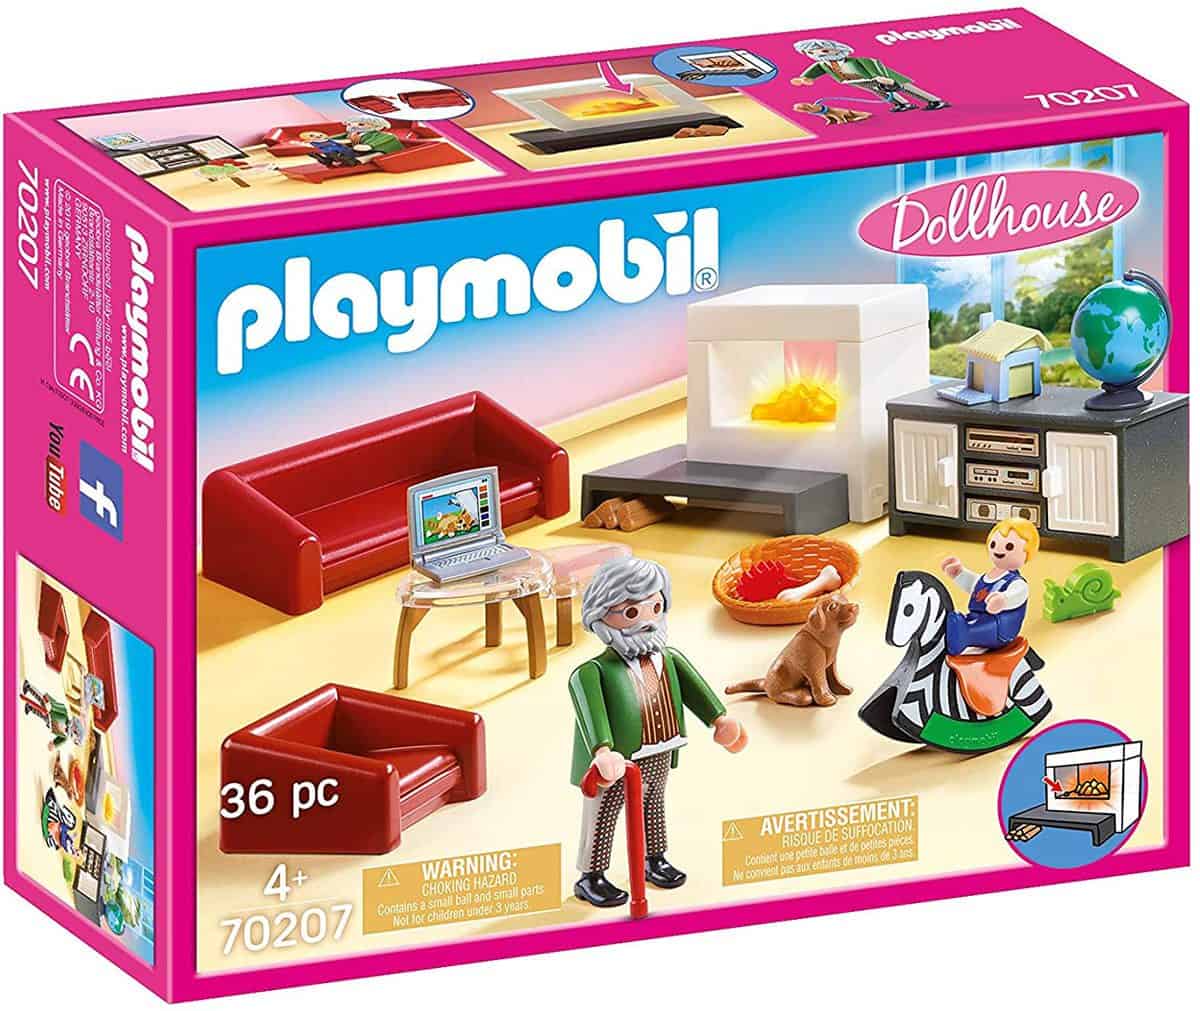 Playmobil Dollhouse - Gemütliches Wohnzimmer mit Lichteffekt (70207) - für 8,01 € [Prime] statt 13,49 €